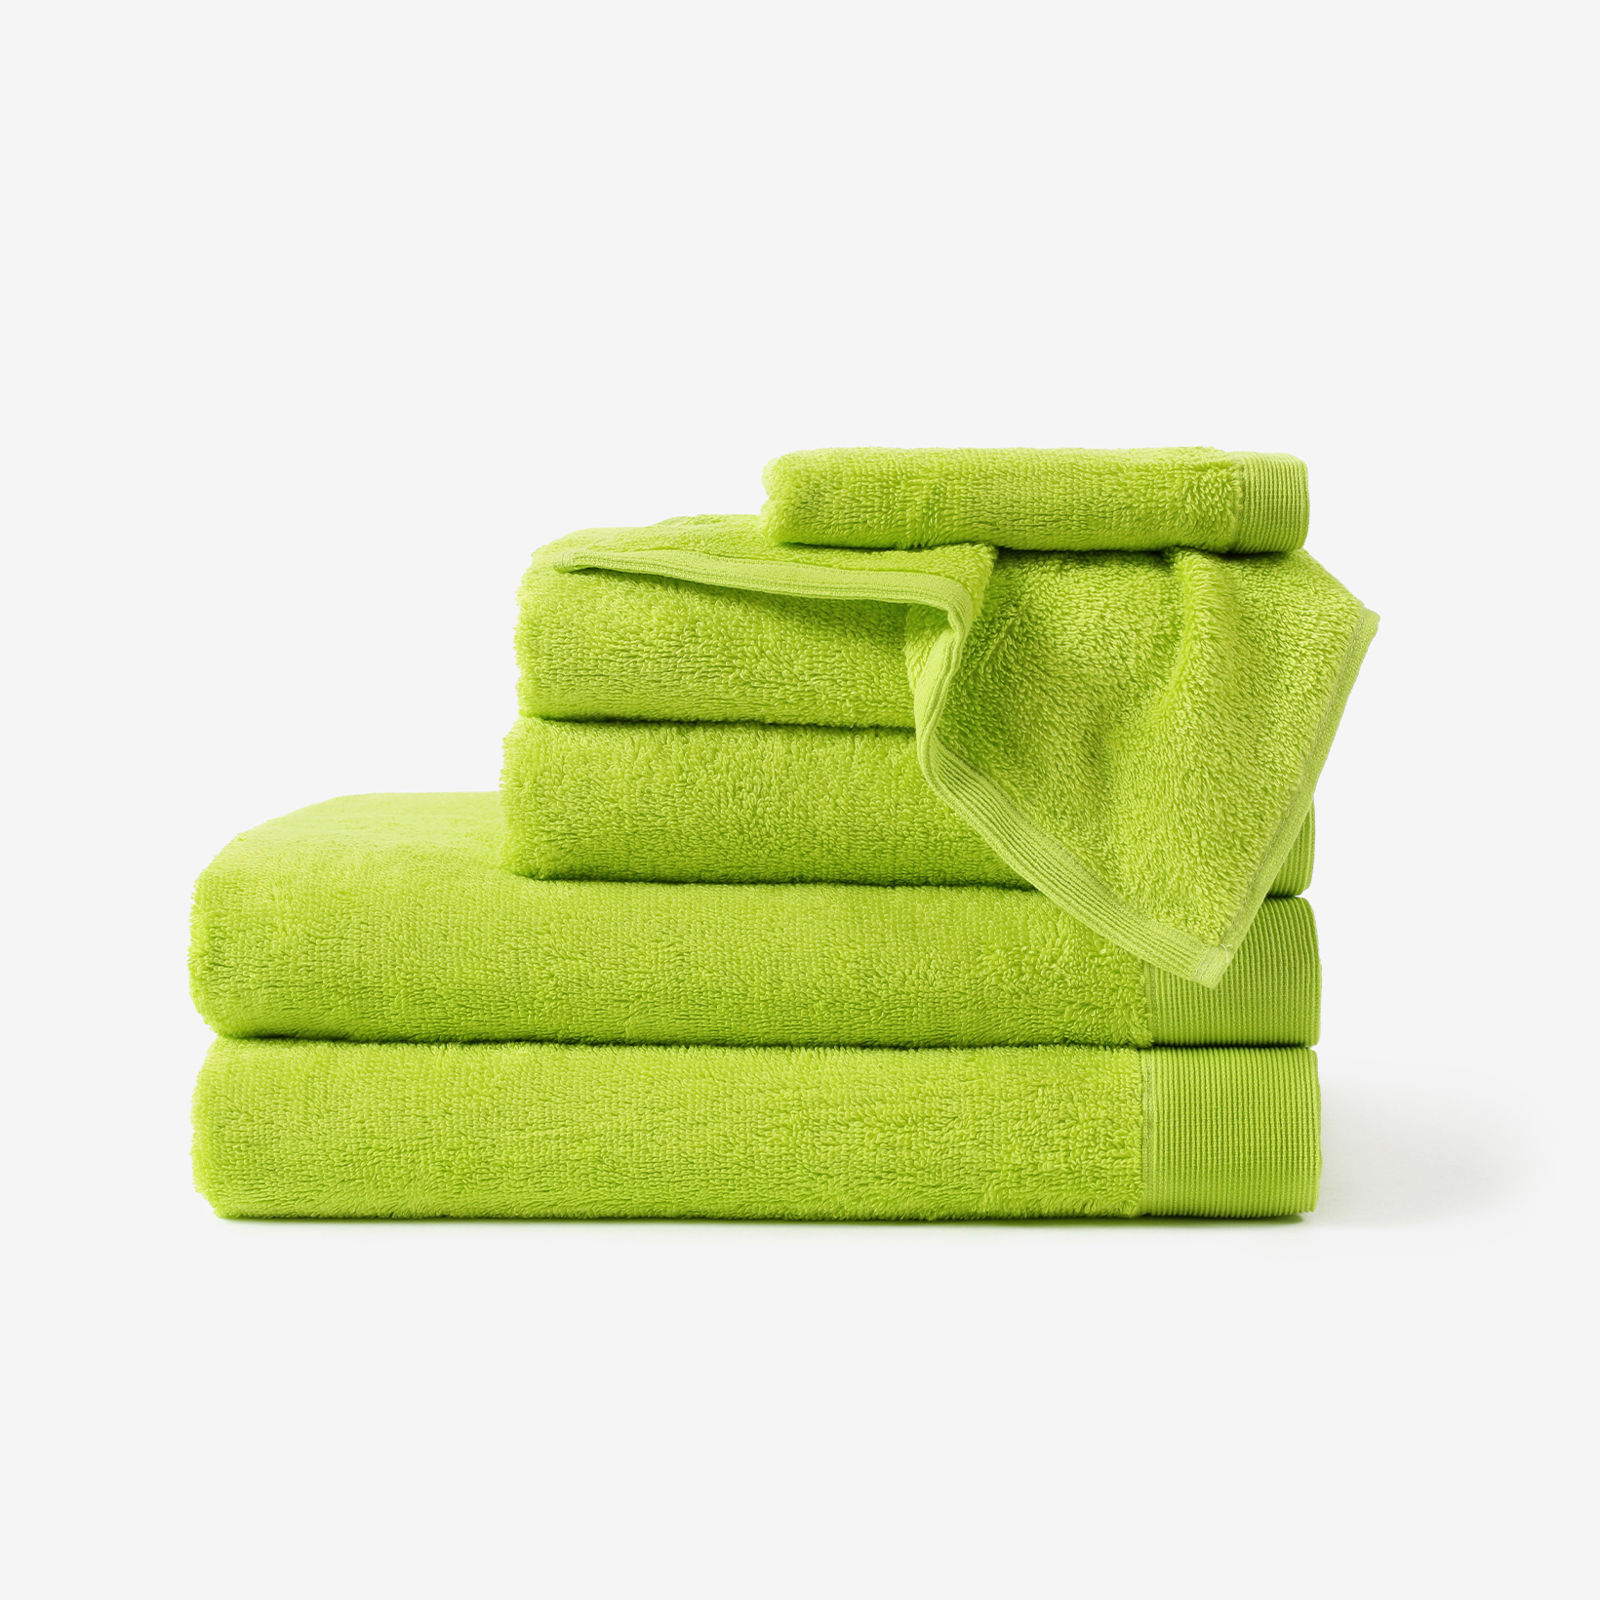 Modalový ručník/osuška s přírodním vláknem - zelený